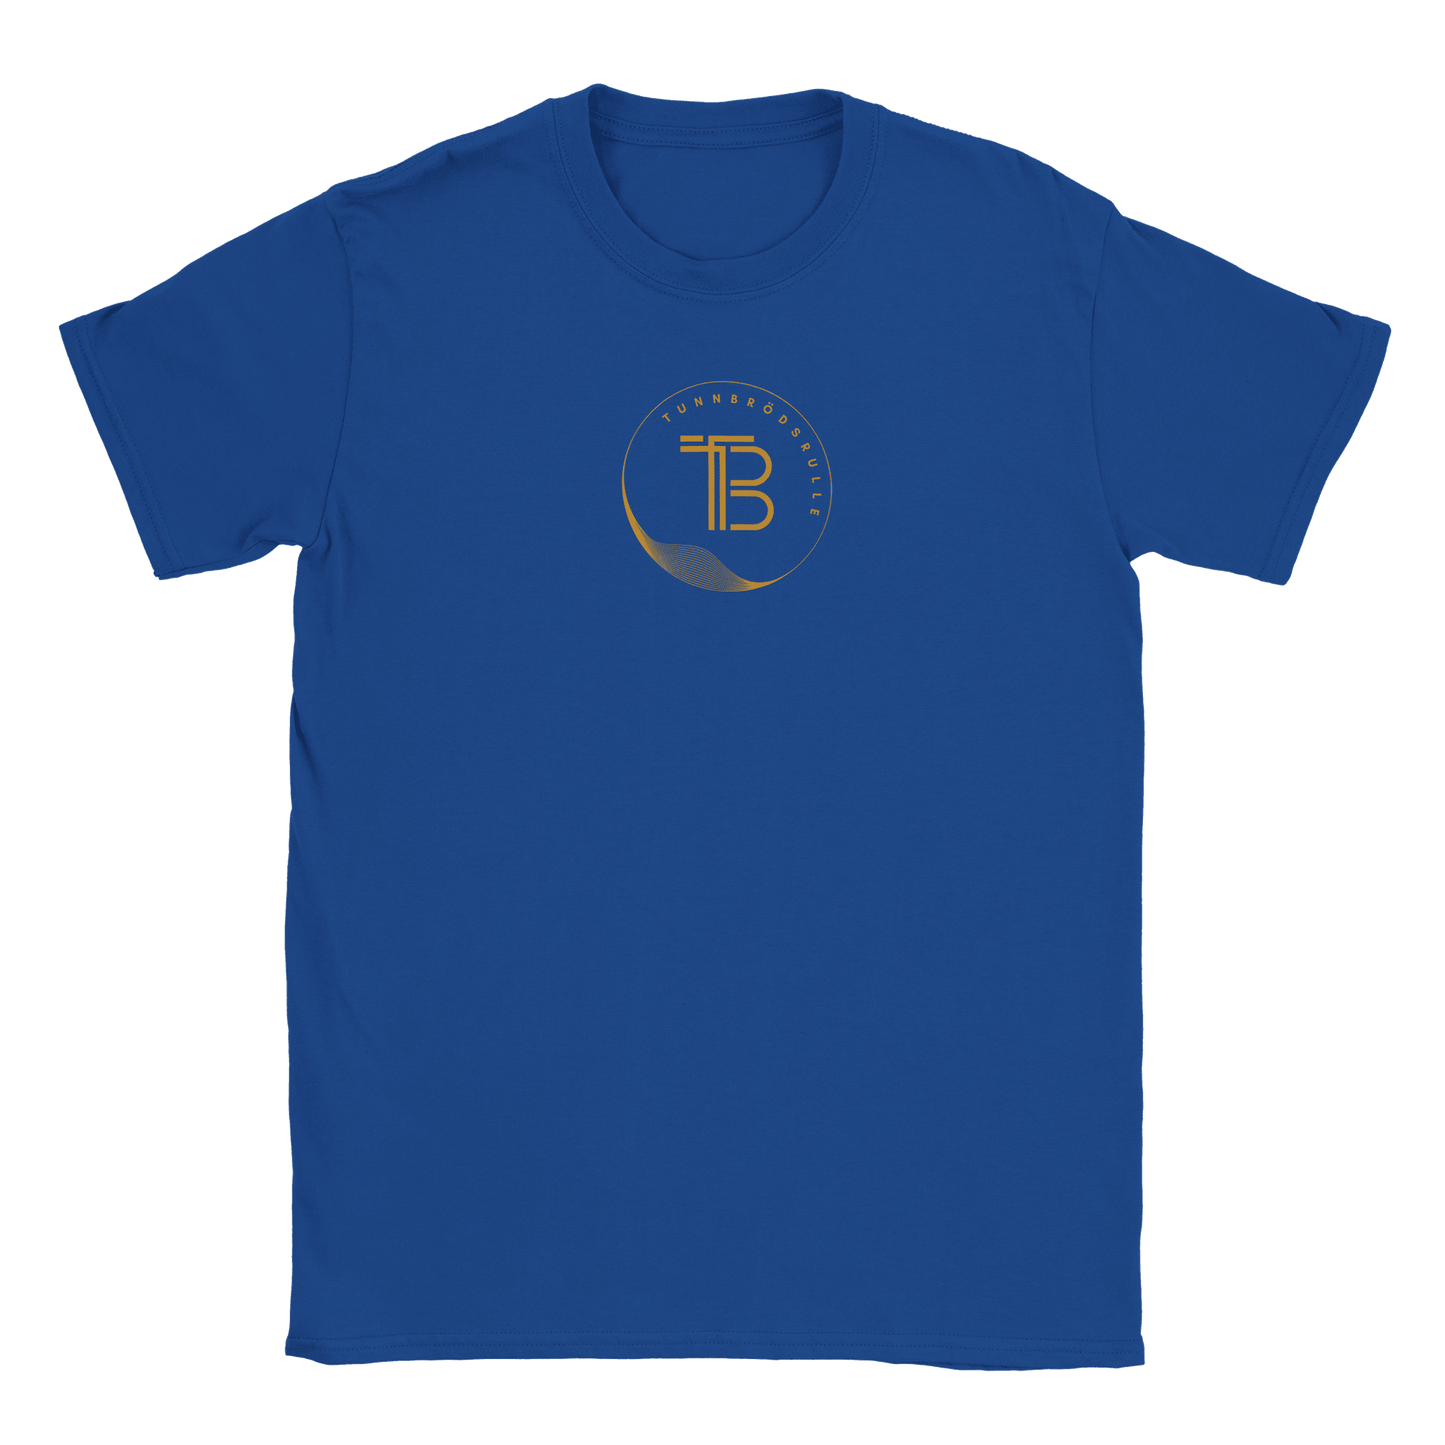 Tunnbrödsrulle - T-shirt Blå